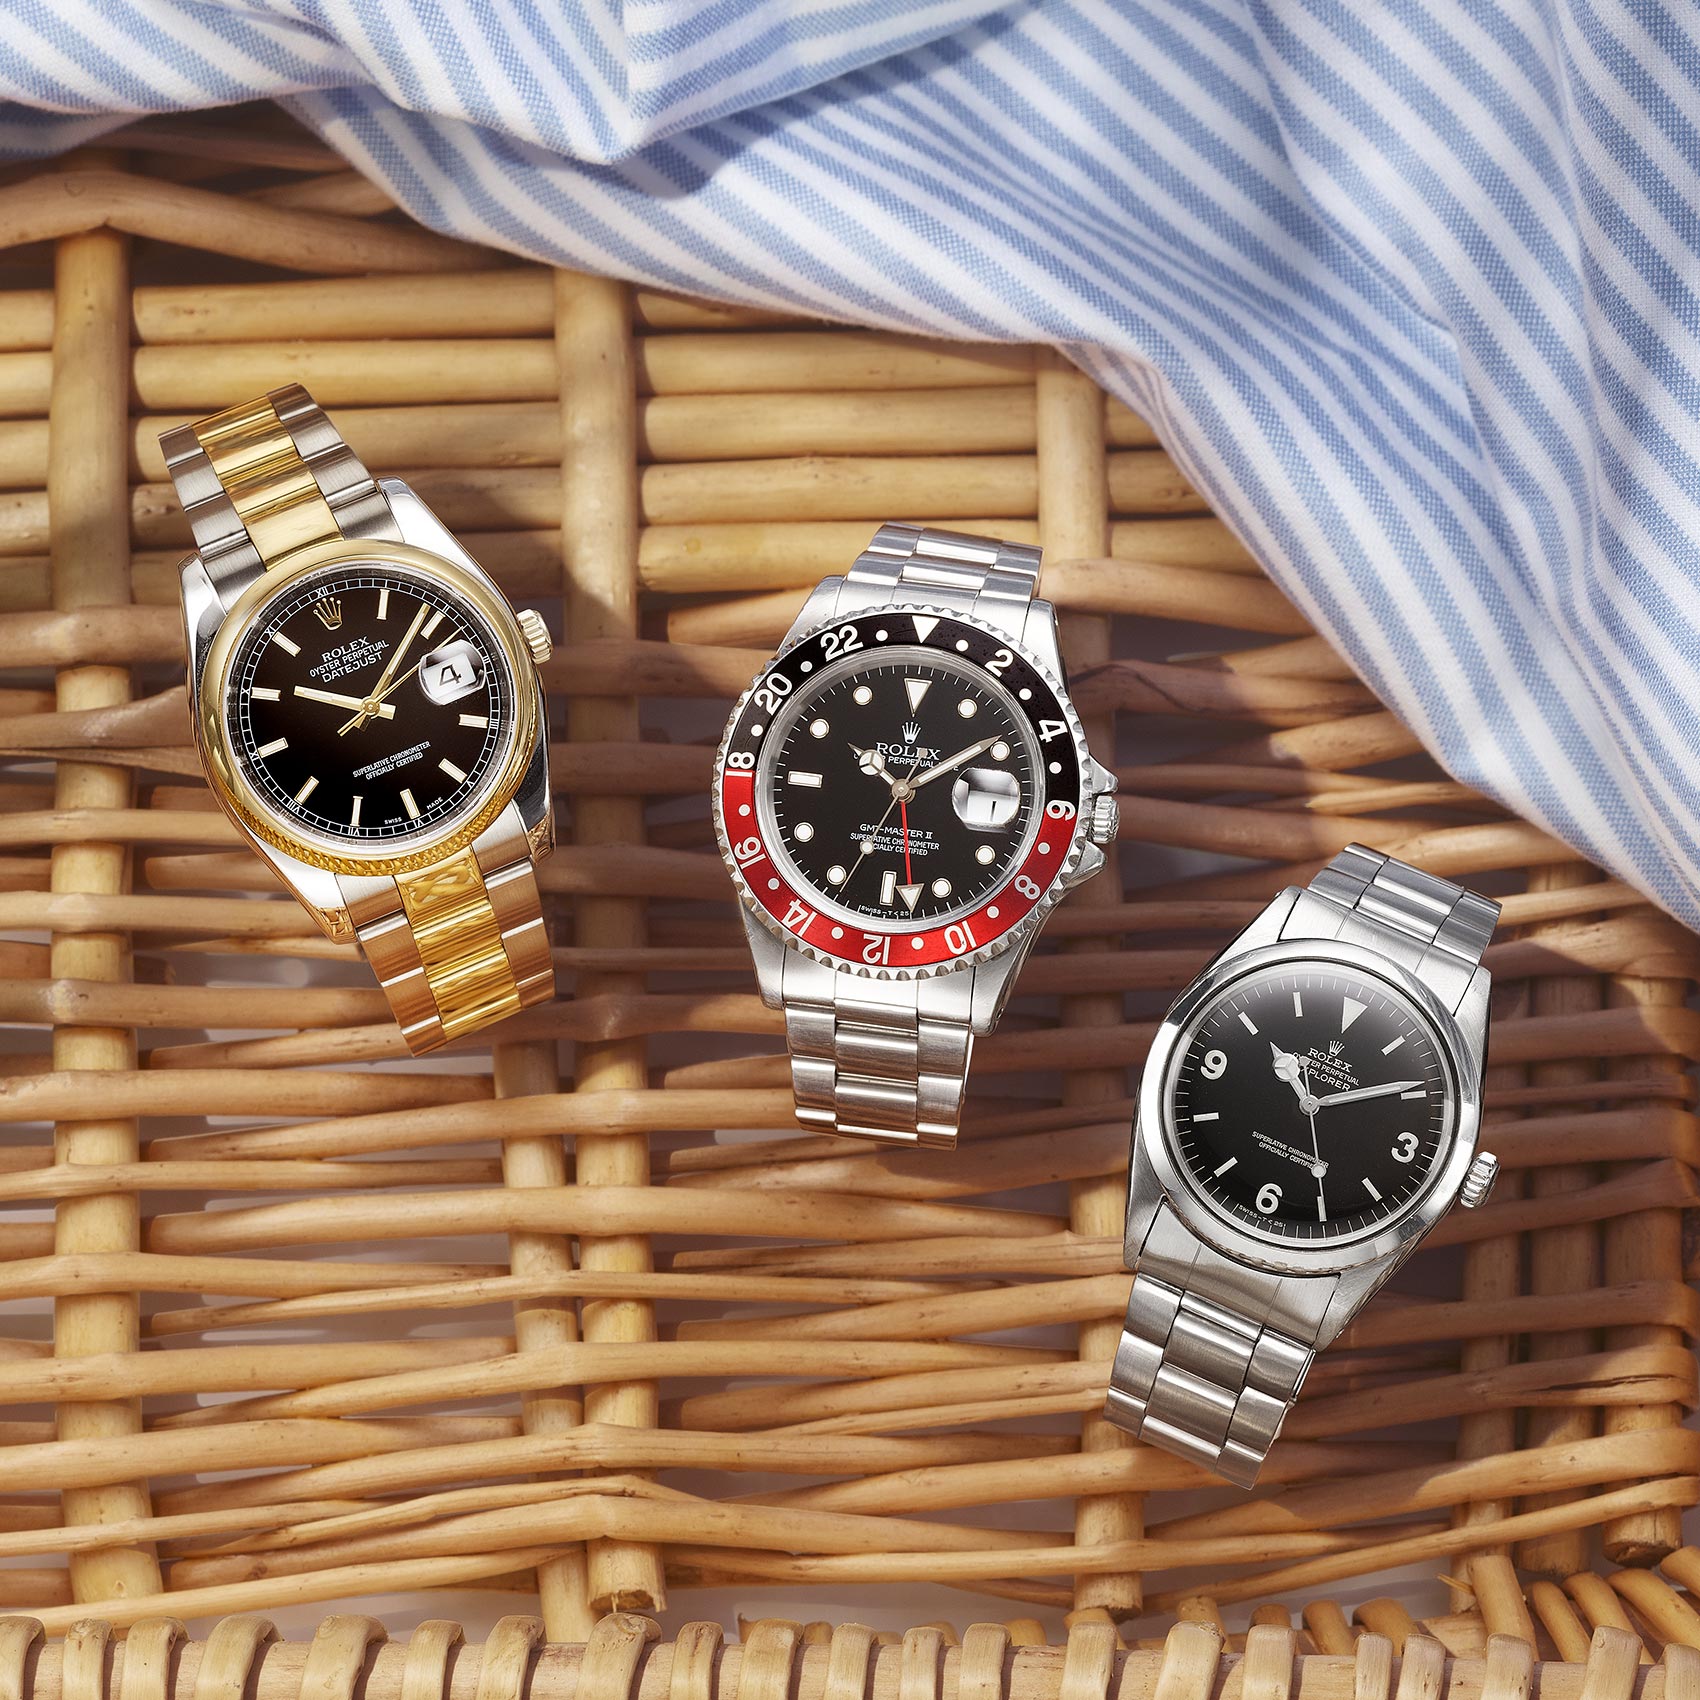 Rolex Watches in Basket